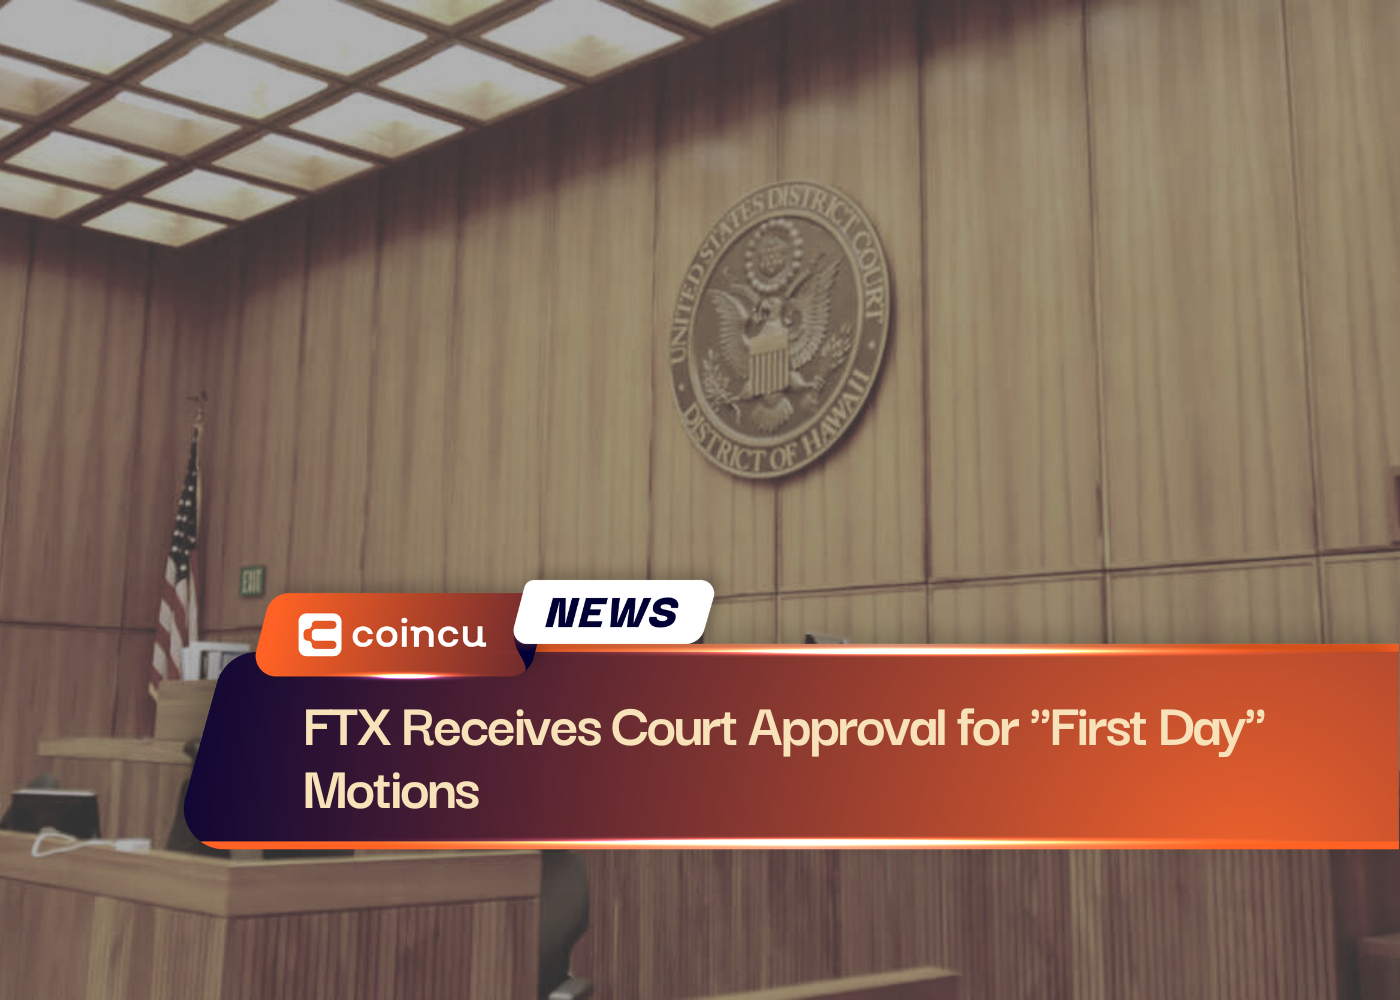 एफटीएक्स को "पहले दिन" प्रस्तावों के लिए न्यायालय की मंजूरी प्राप्त हुई